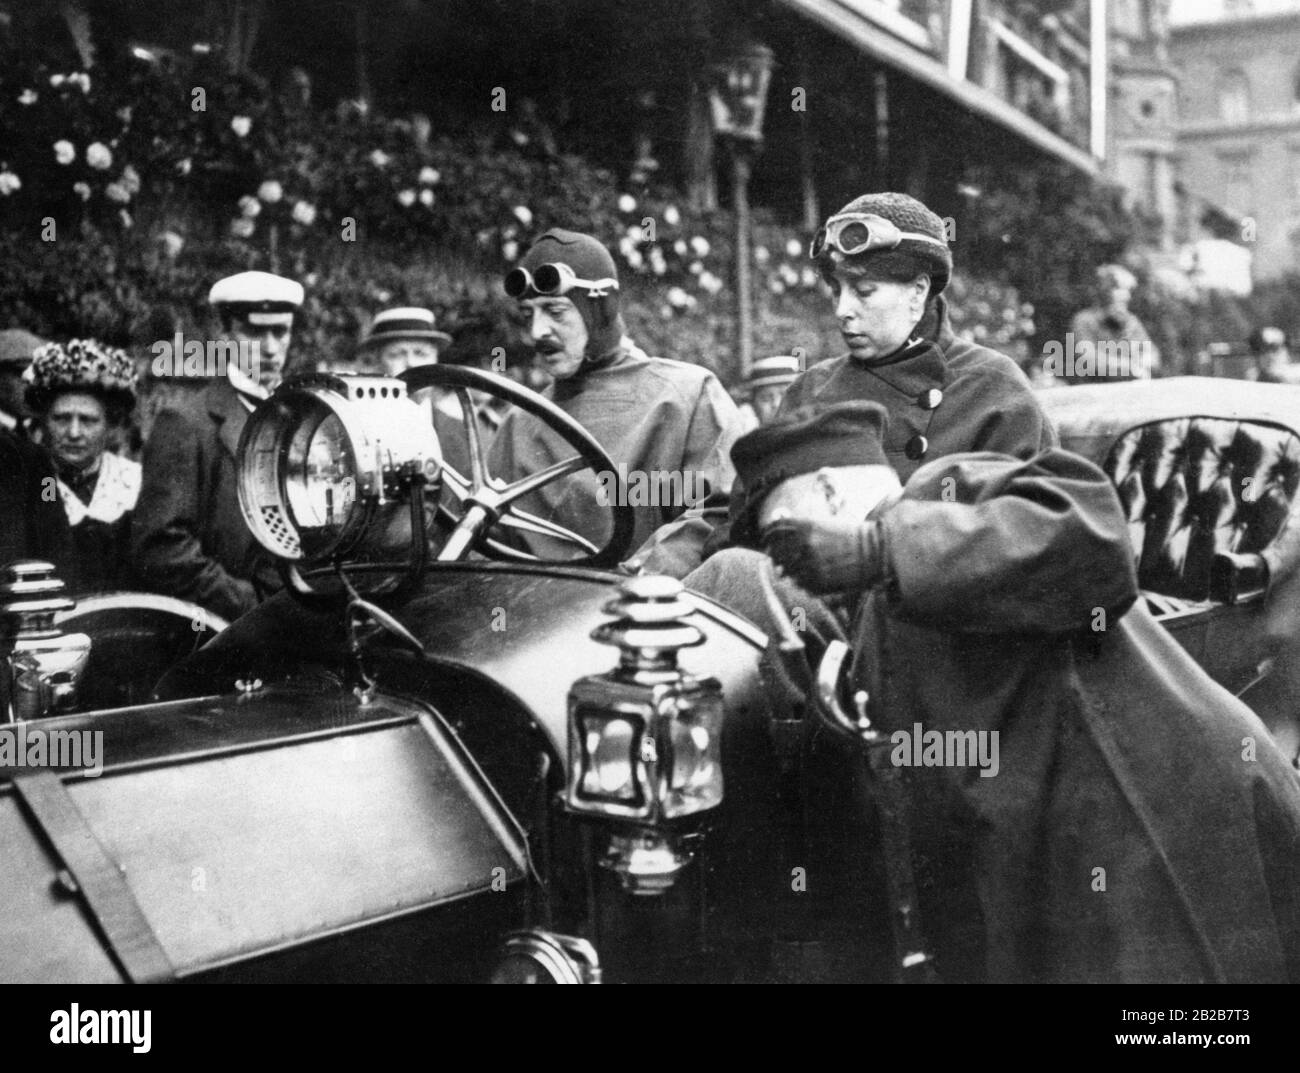 Grande duchessa Vittoria di Russia (nata von Saxe-Coburg e Gotha) con suo marito, Granduca Cirillo di Russia in un viaggio in auto attraverso la Svezia nel 1912. Il fatto che la principessa guidasse la vettura stessa causava una sensazione considerevole. Foto Stock